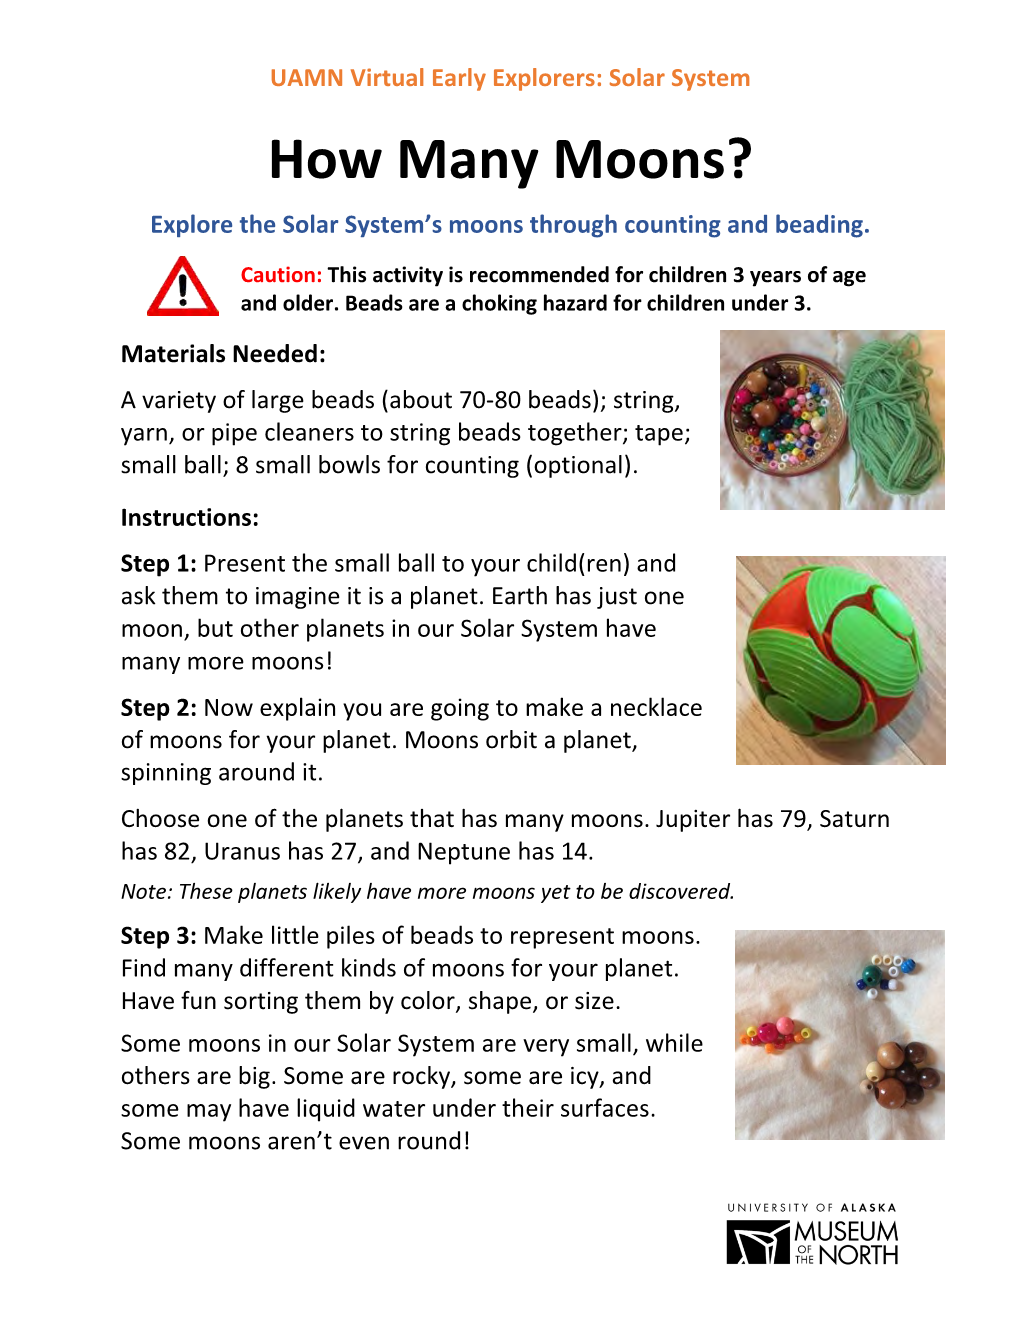 How Many Moons? Activity